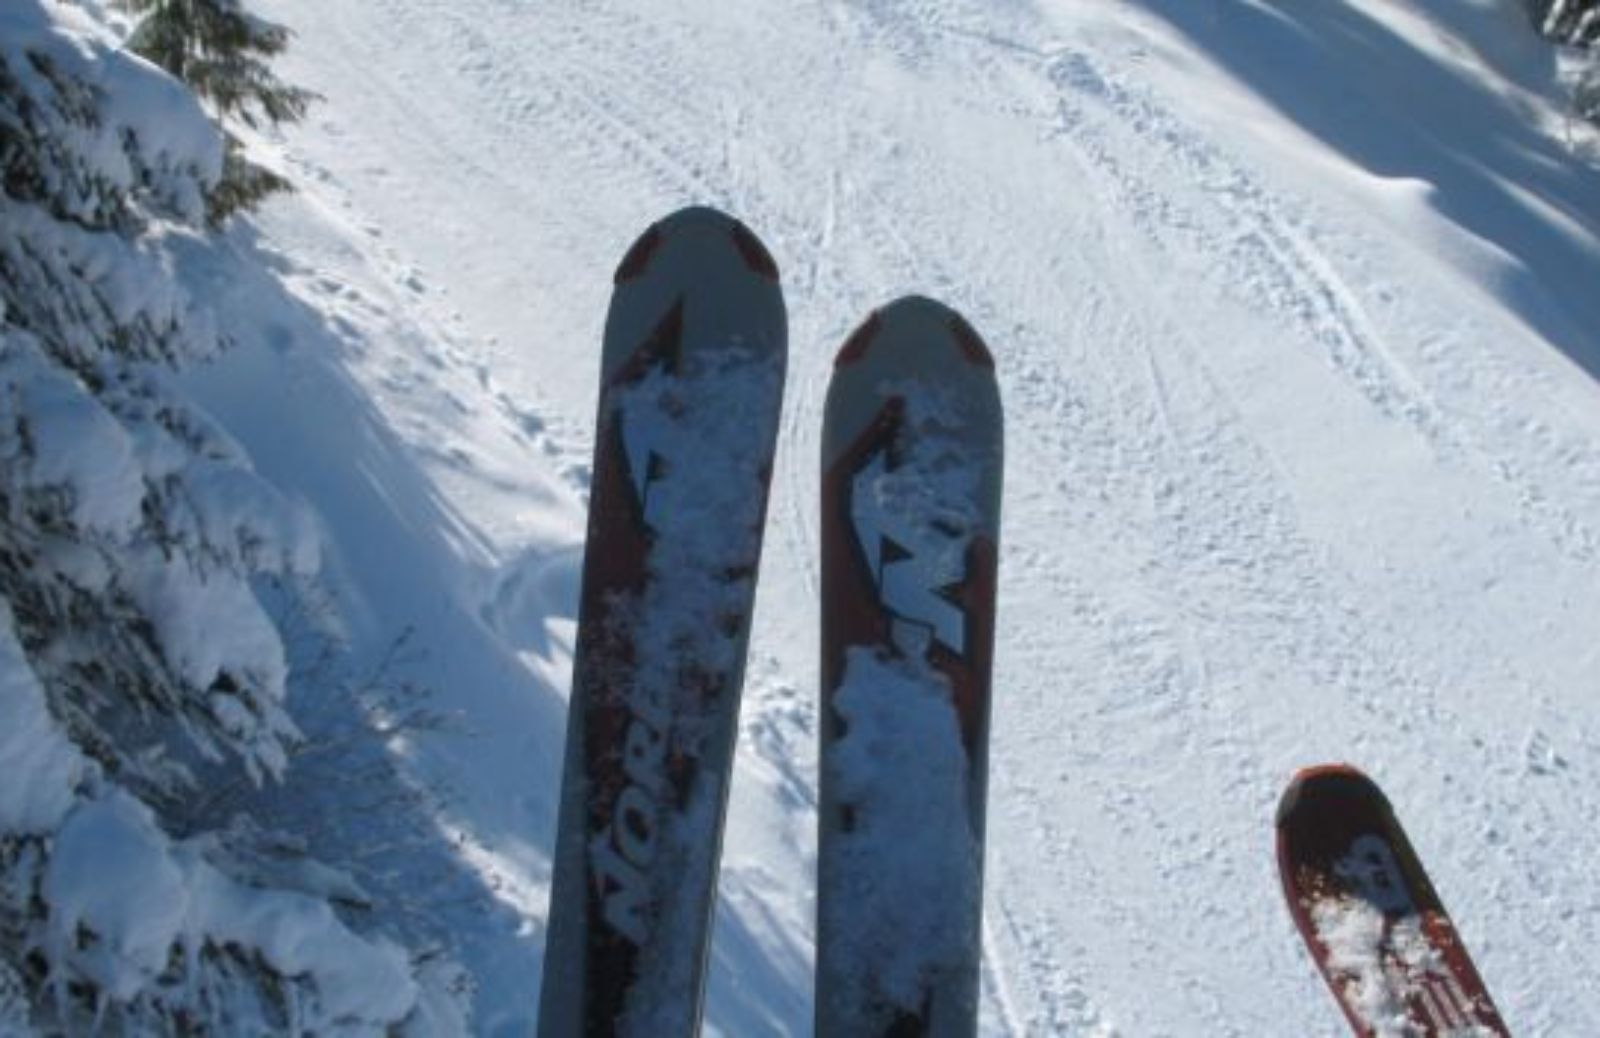 Come imparare a sciare: l'attrezzatura